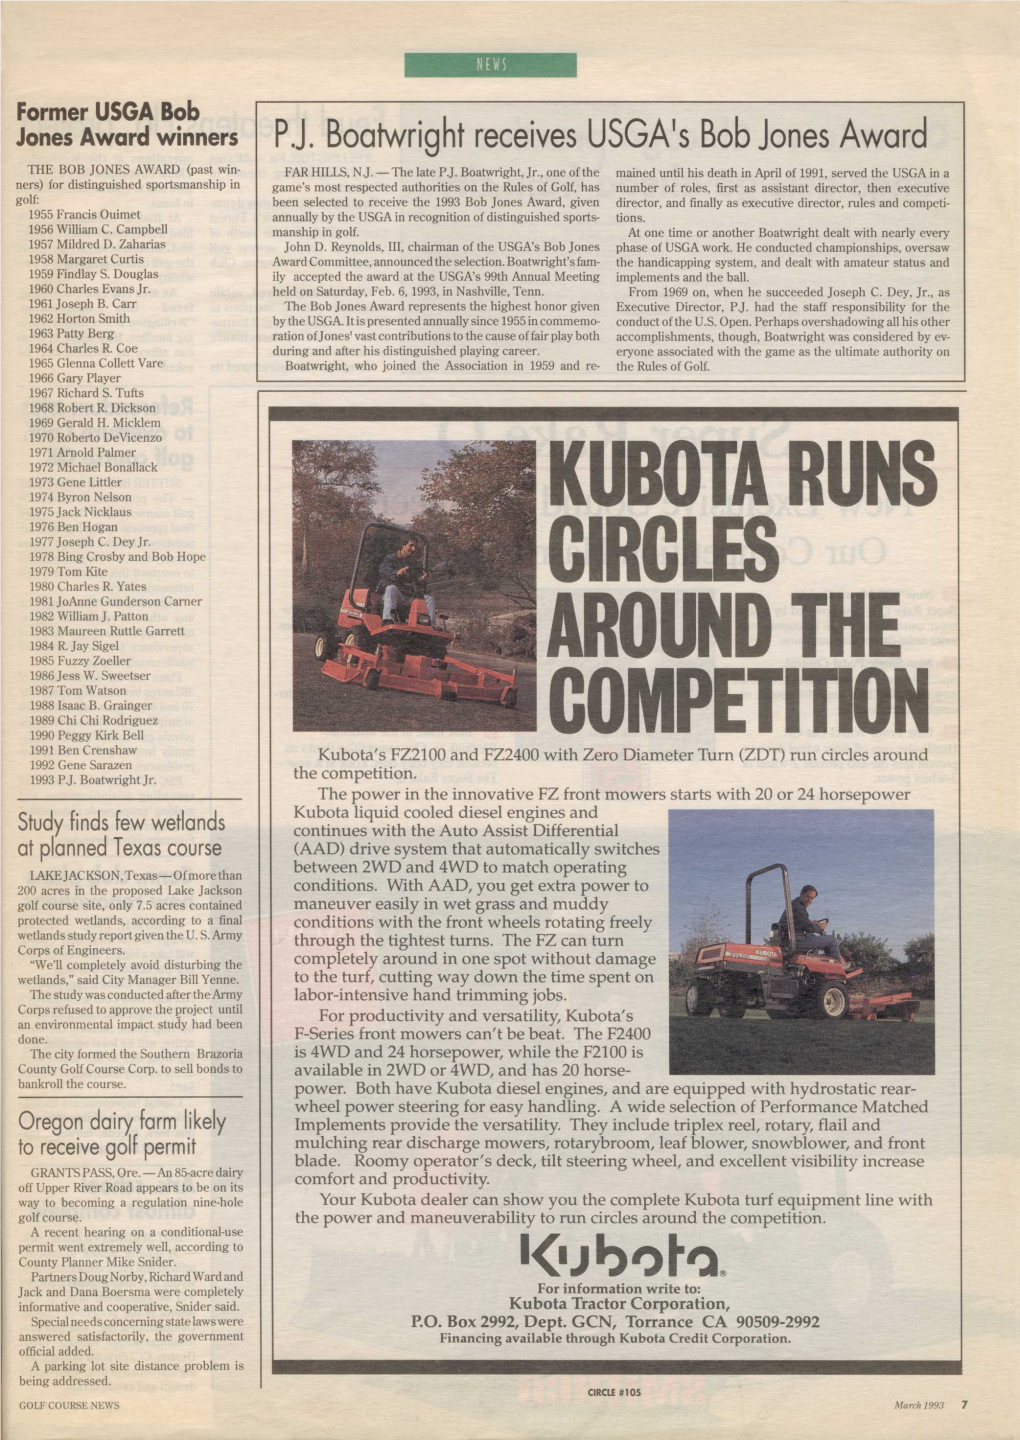 Kub0ta Runs Circles Around the Competition